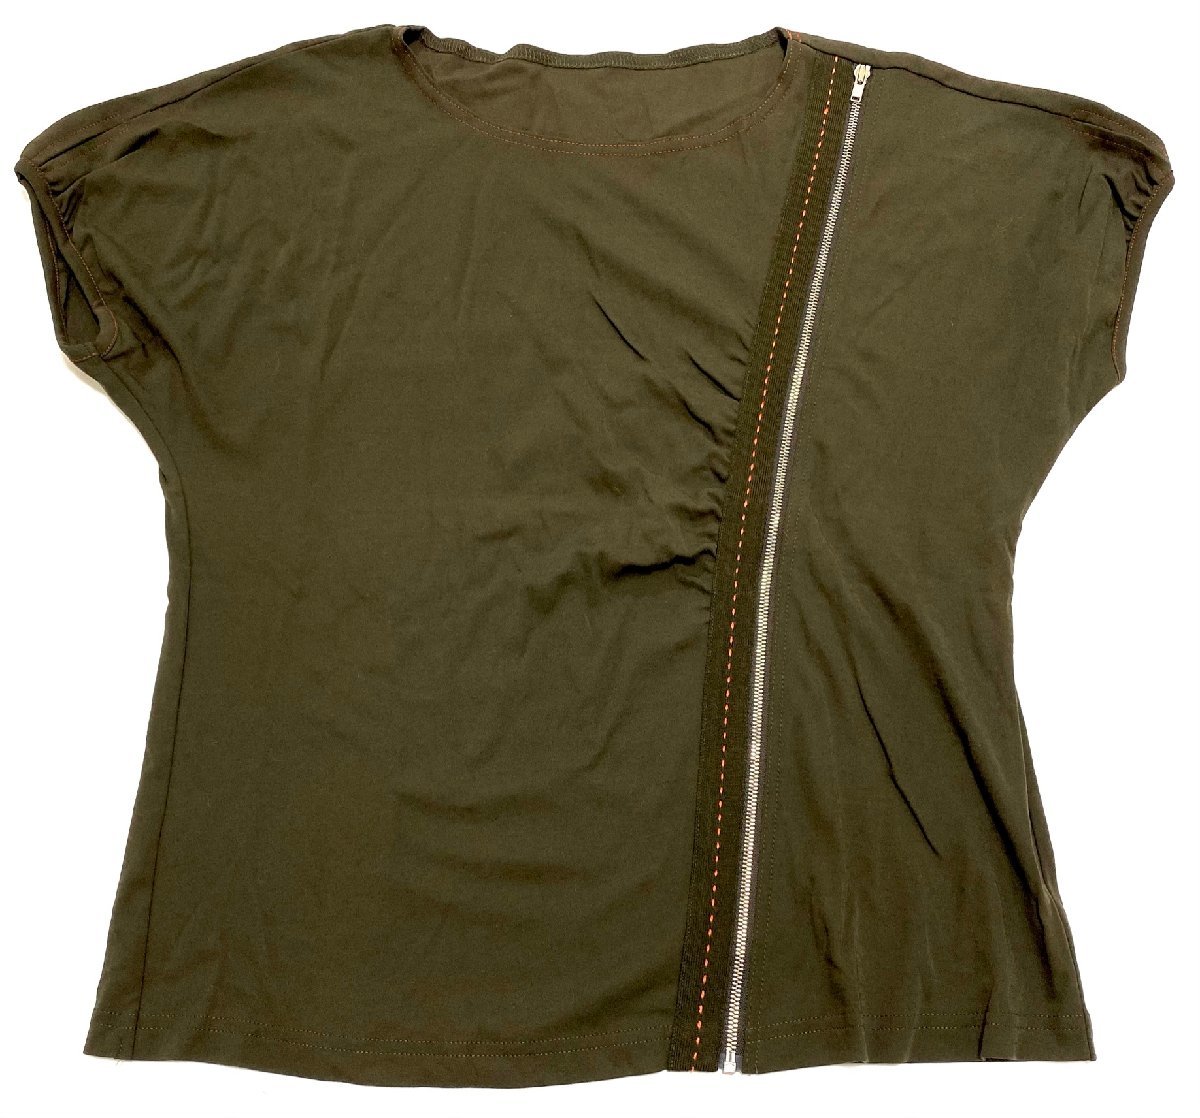 新品同様 極美品 leilian レリアン トップス カットソー Tシャツ 半袖 カーキ グリーン size11 オシャレ シンプル 上品 上質 綺麗めの画像1